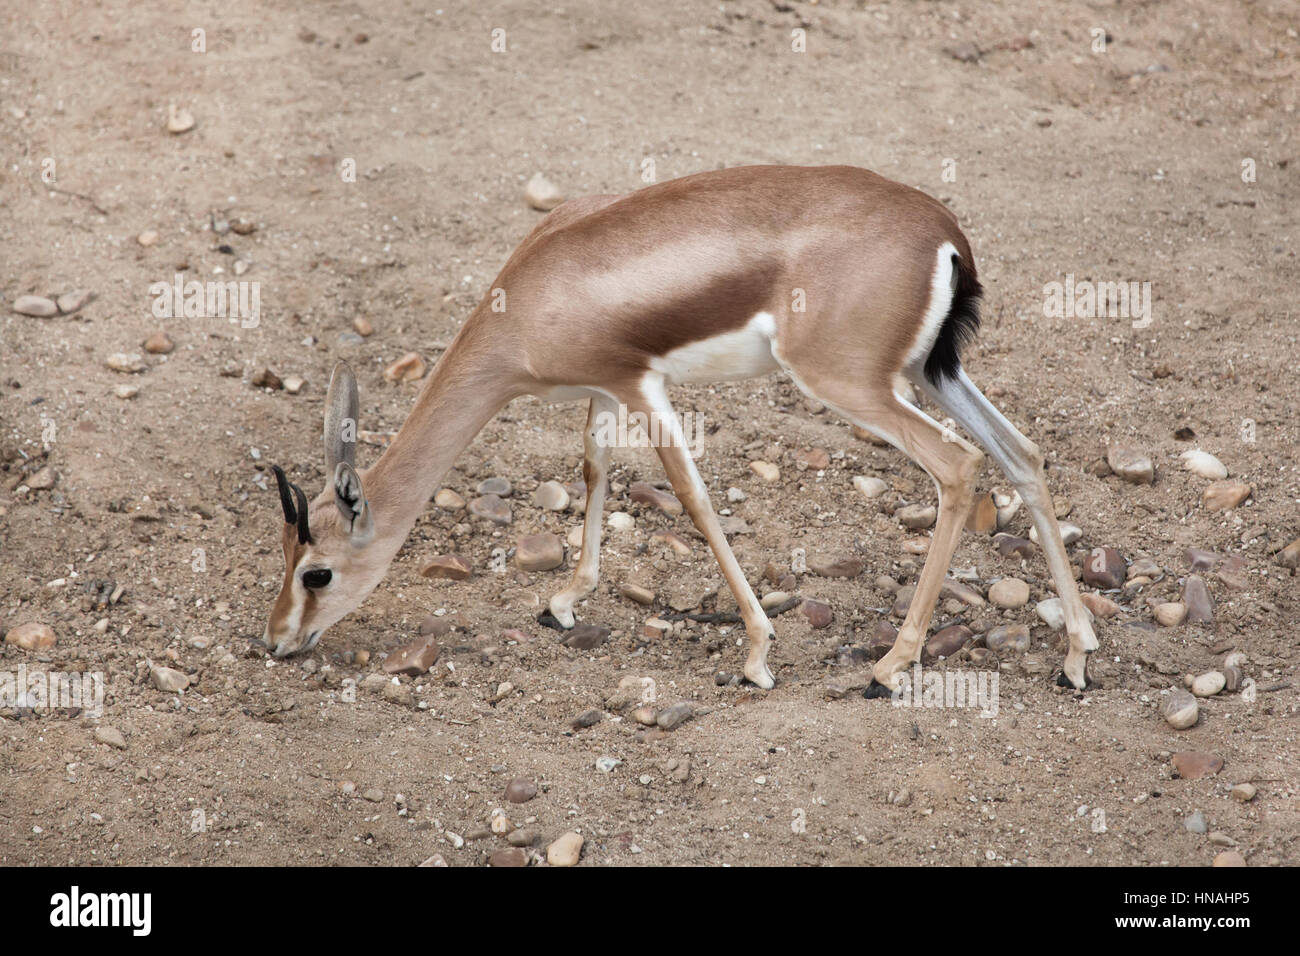 Saharan dorcas gazelle (Gazella dorcas), also known as the Kordofan dorcas. Stock Photo